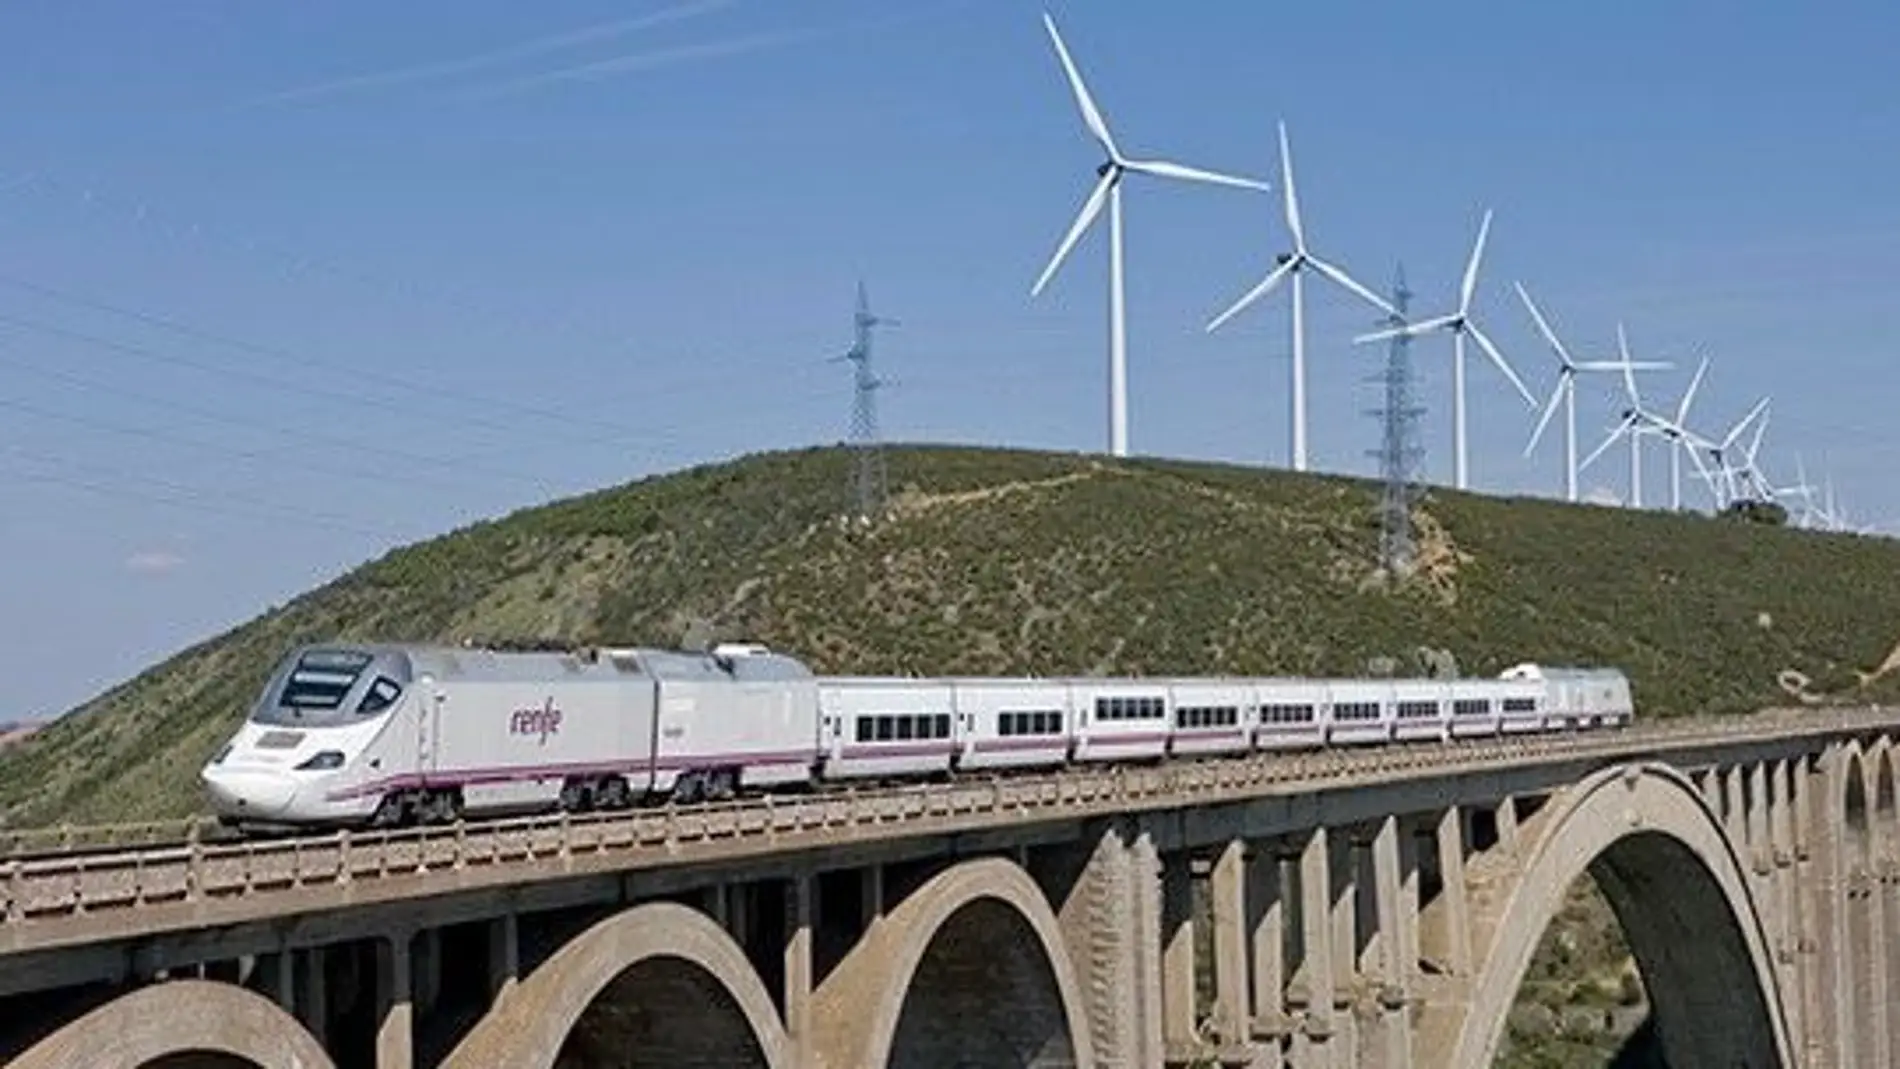 Comienzan las pruebas del Tren híbrido por las vías de la Alta Velocidad en Extremadura